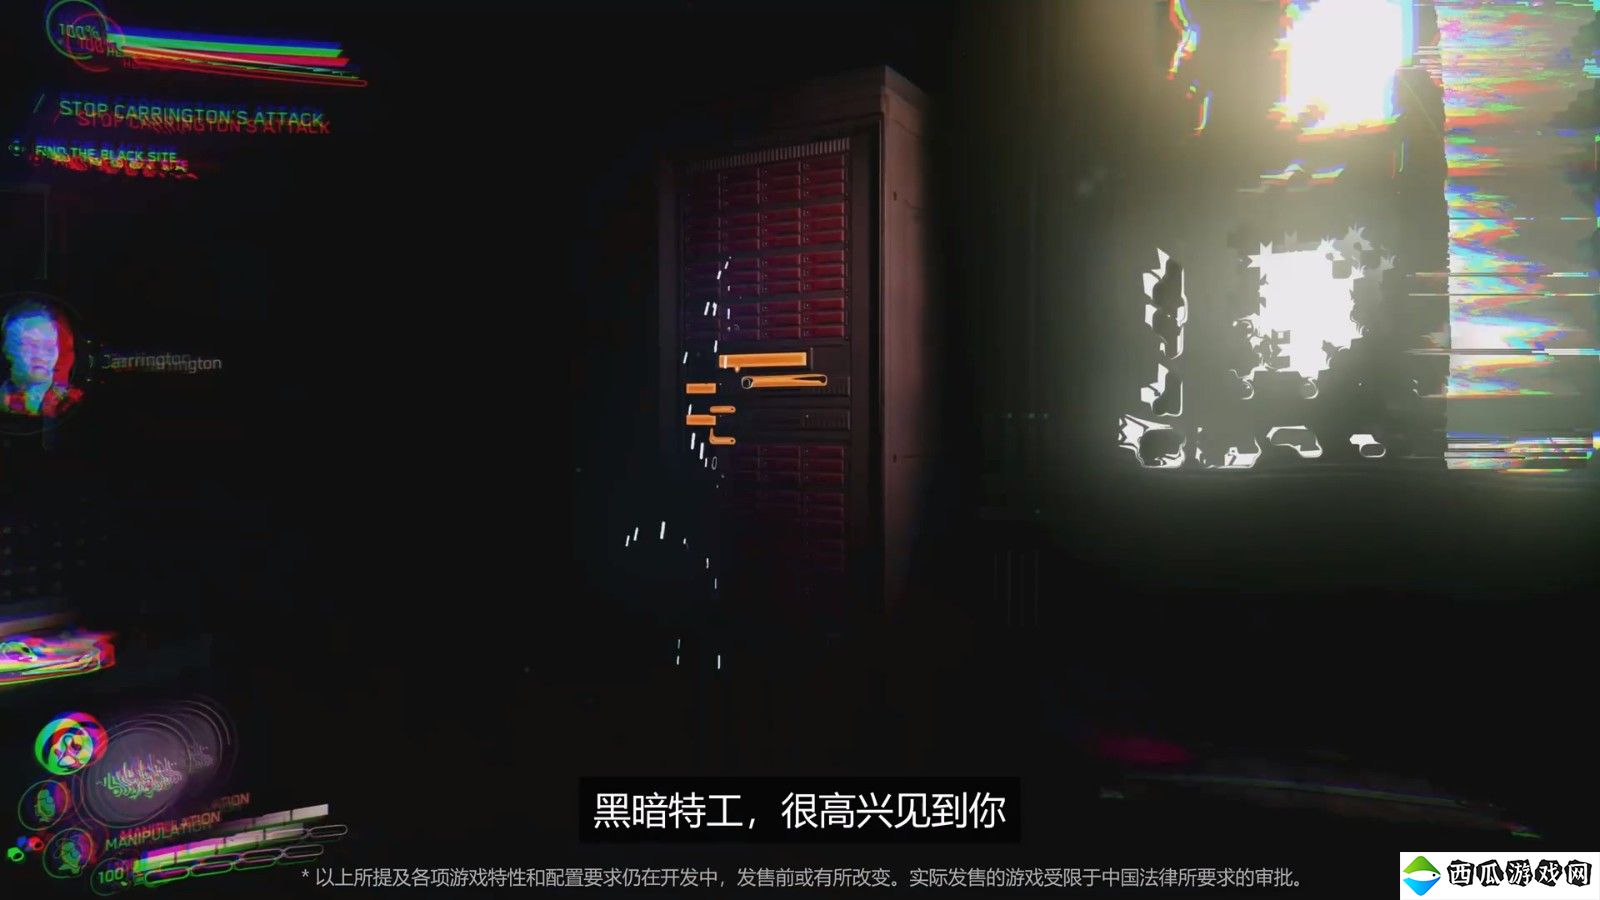 《完美黑暗》中文版实机宣传片 新旧版女主对比